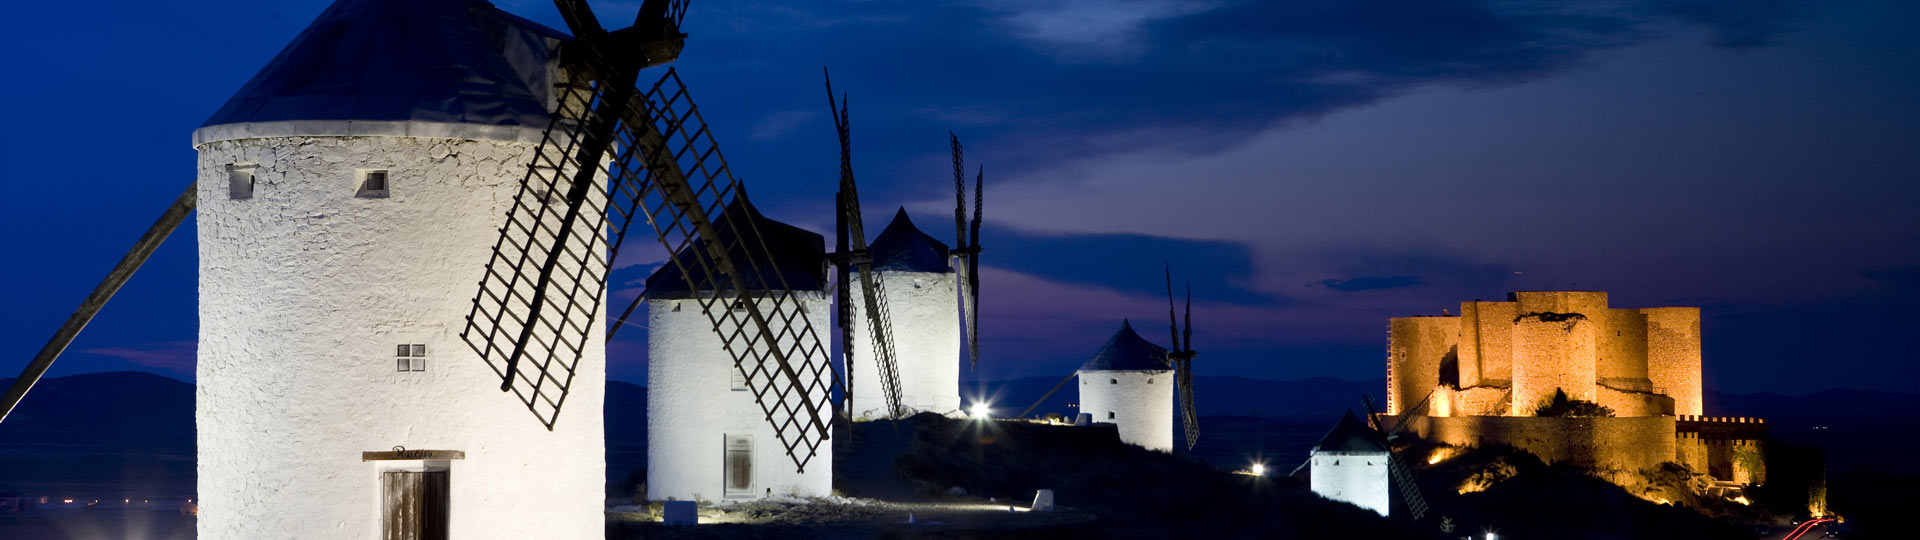 Windmühlen mit der Burg von Consuegra im Hintergrund